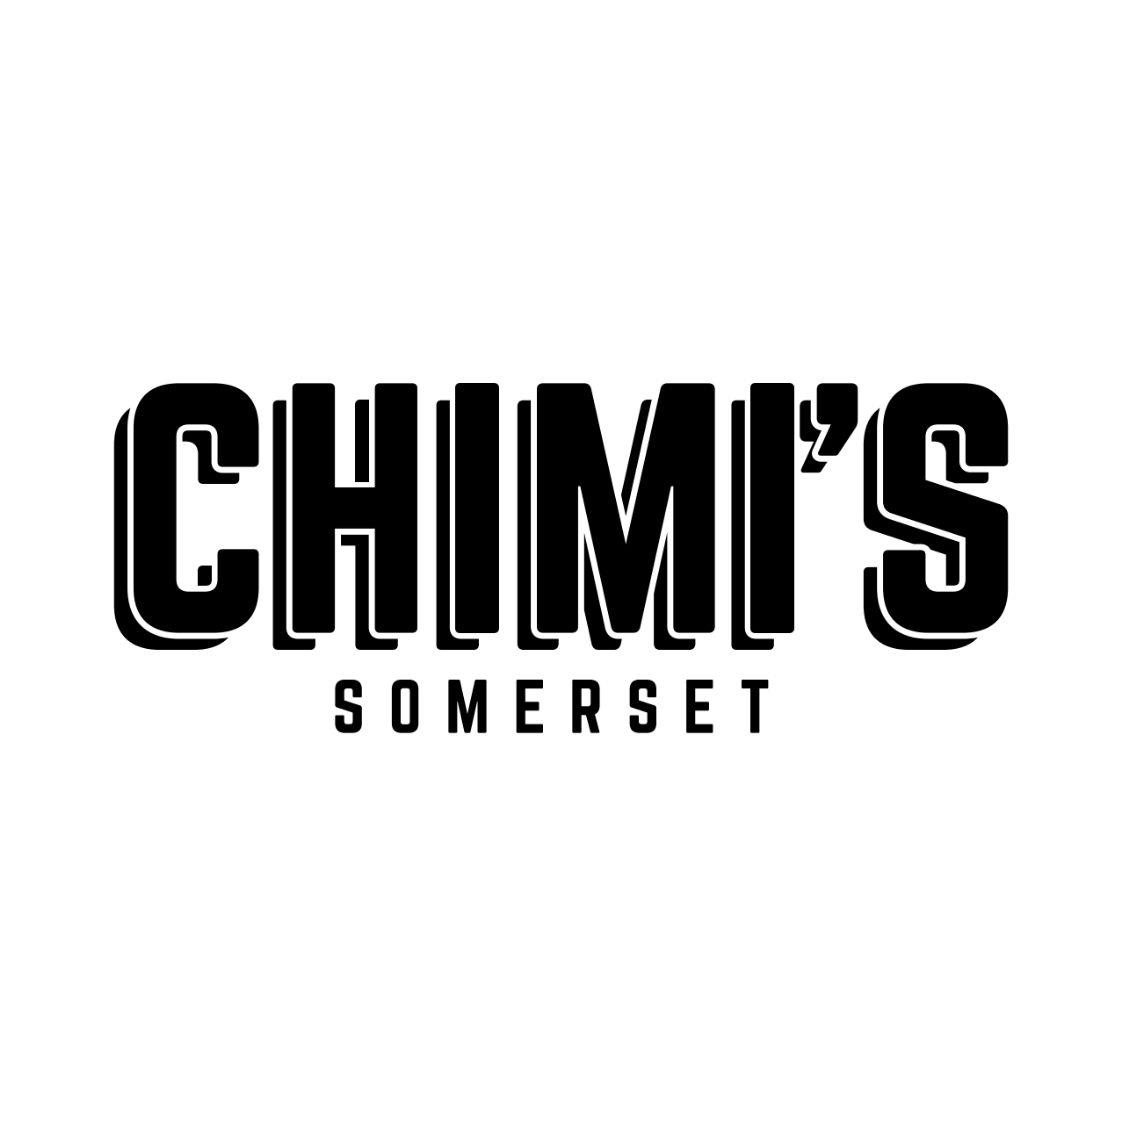 chimis-logo.jpg